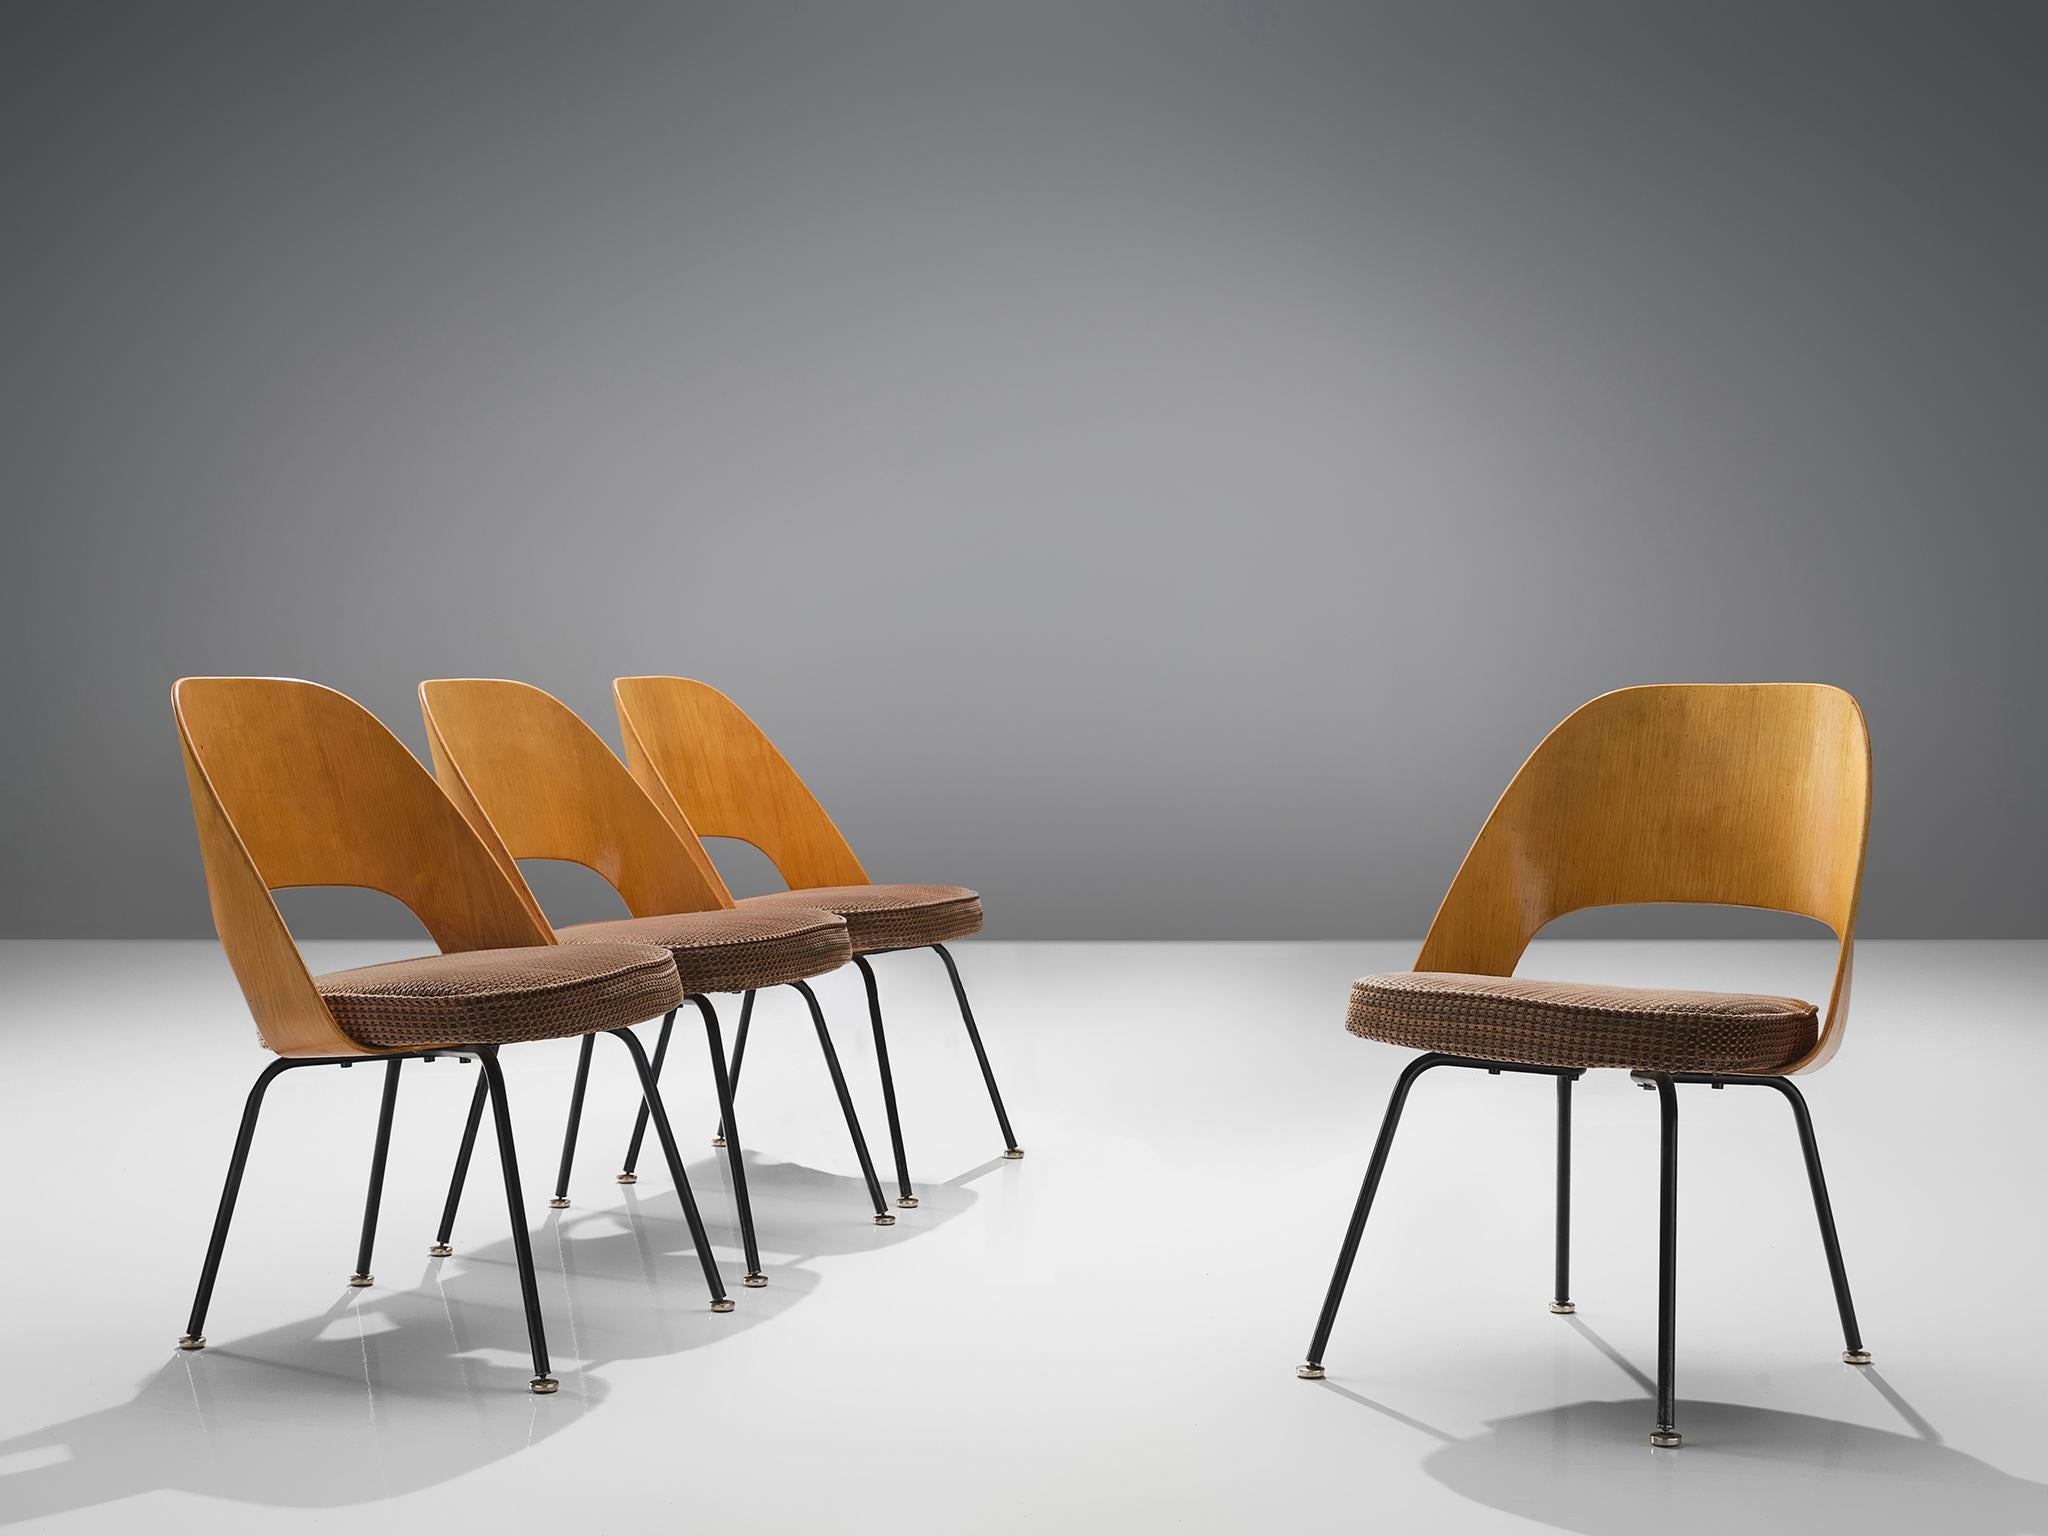 Eero Saarinen pour Knoll International, ensemble de quatre chaises de salle à manger, fer revêtu, contreplaqué, velours, États-Unis / Belgique, design 1948, production années 1960

Quatre chaises de forme organique conçues par Eero Saarinen. Ce